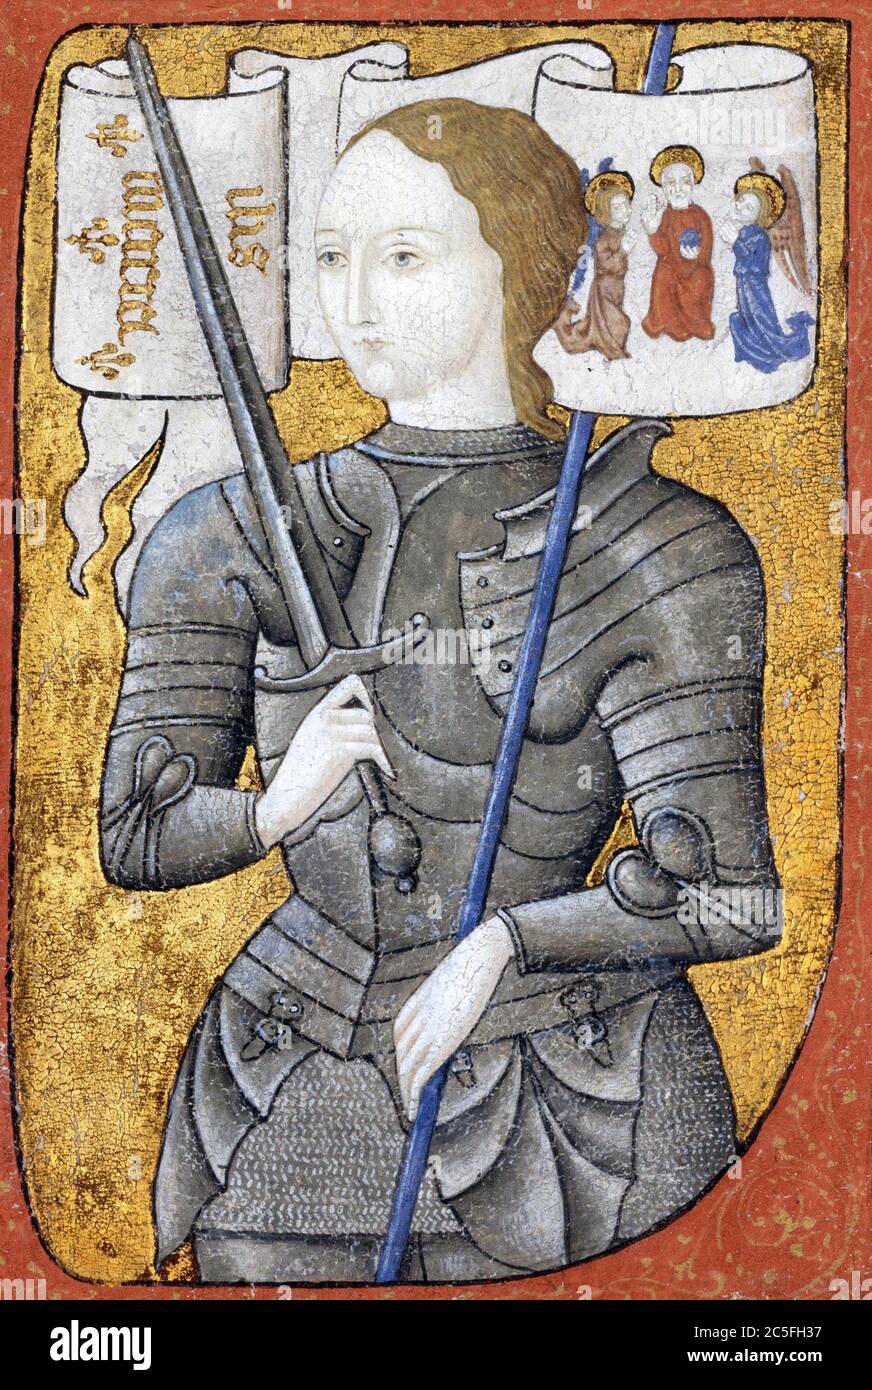 Giovanna d'Arco (1412 – 1431) eroina della Francia per il suo ruolo durante la fase Lancastriana della guerra dei cent'anni, canonizzata come santa cattolica romana. Foto Stock